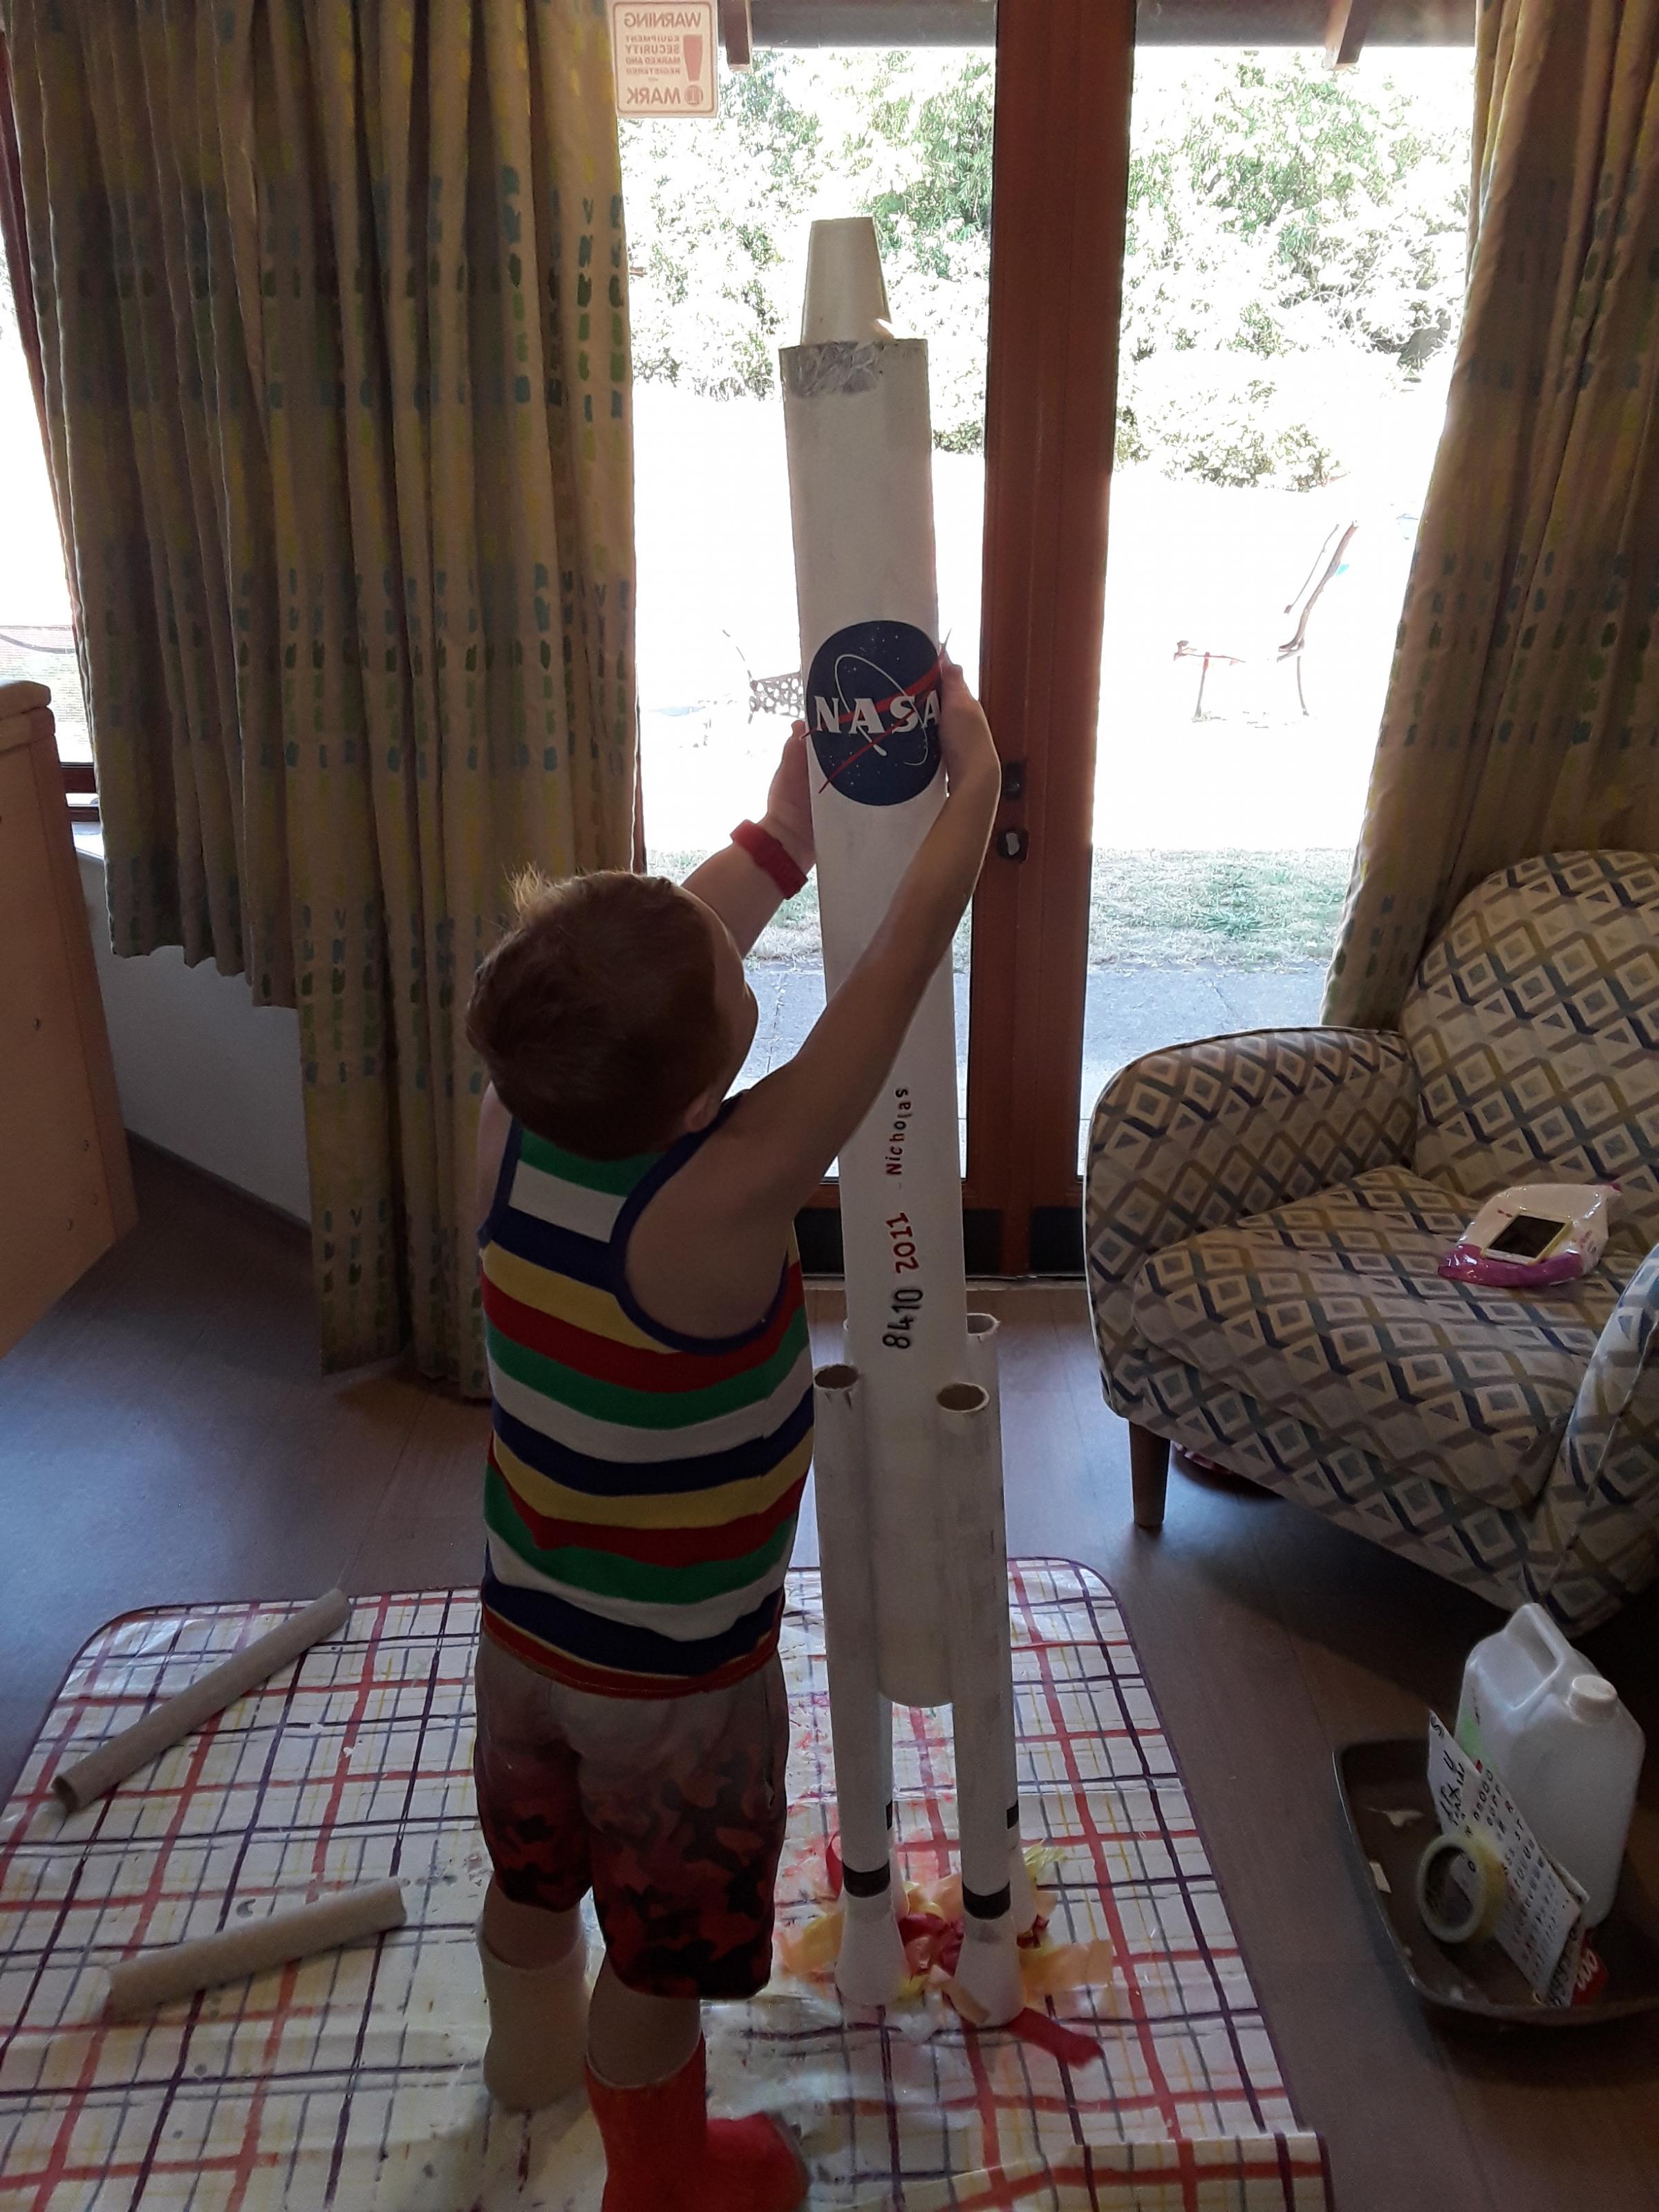 Nicholas building his rocket in the hospice